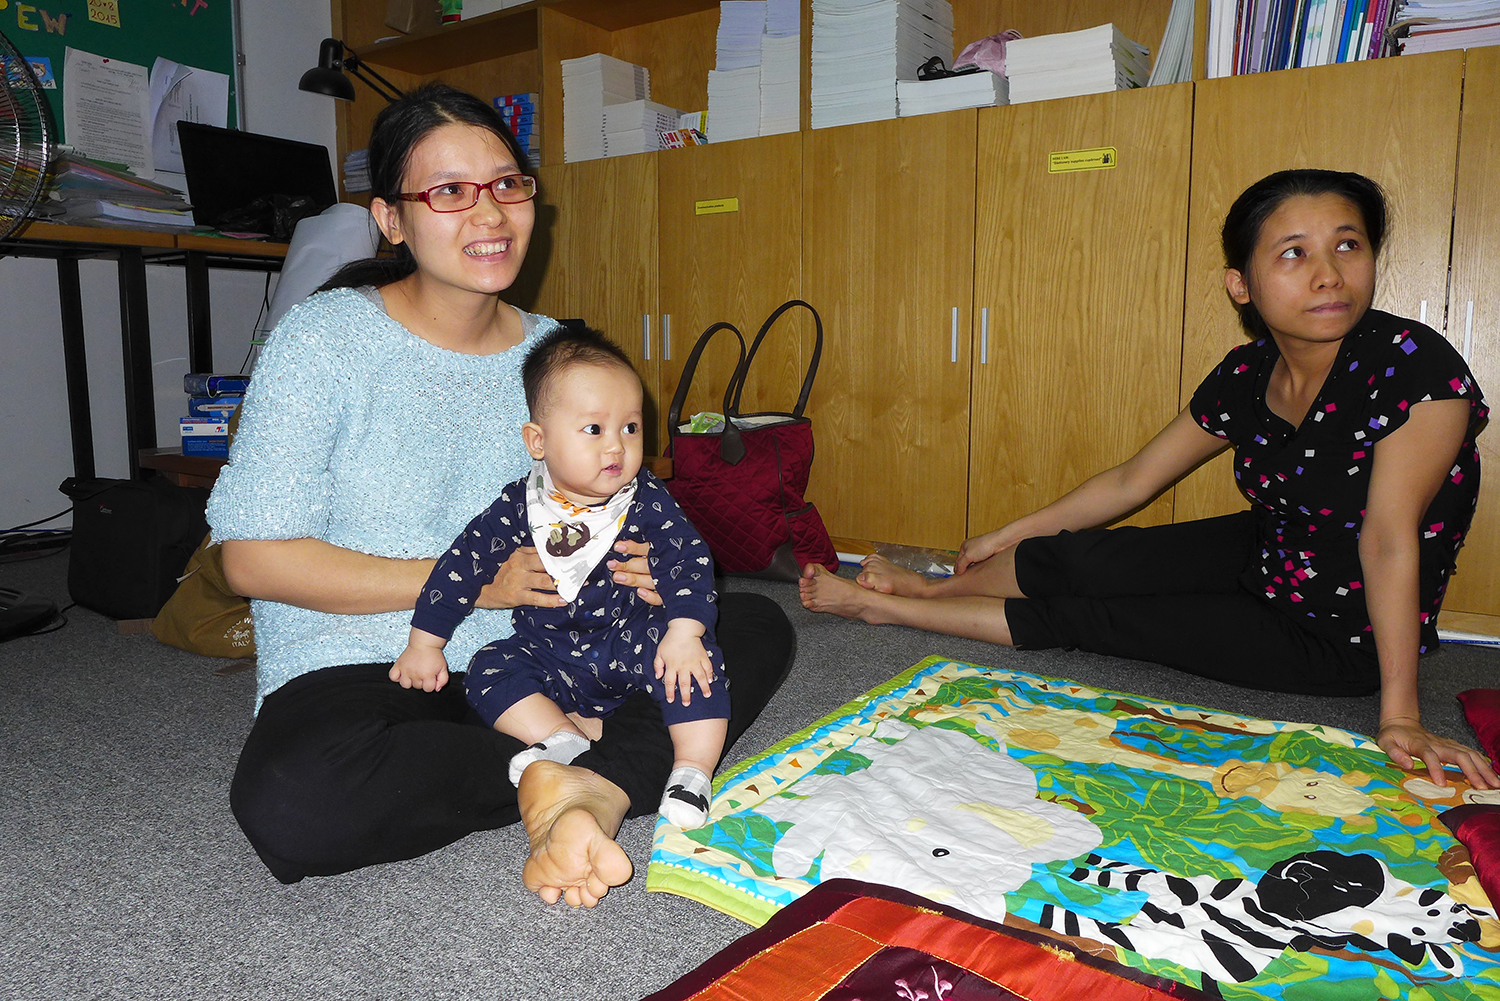 Huong Hoang Thi est venue avec son bébé. Il s’appelle Hieu et il a 7 mois ! Elle a même le droit de faire une petite sieste avec lui.